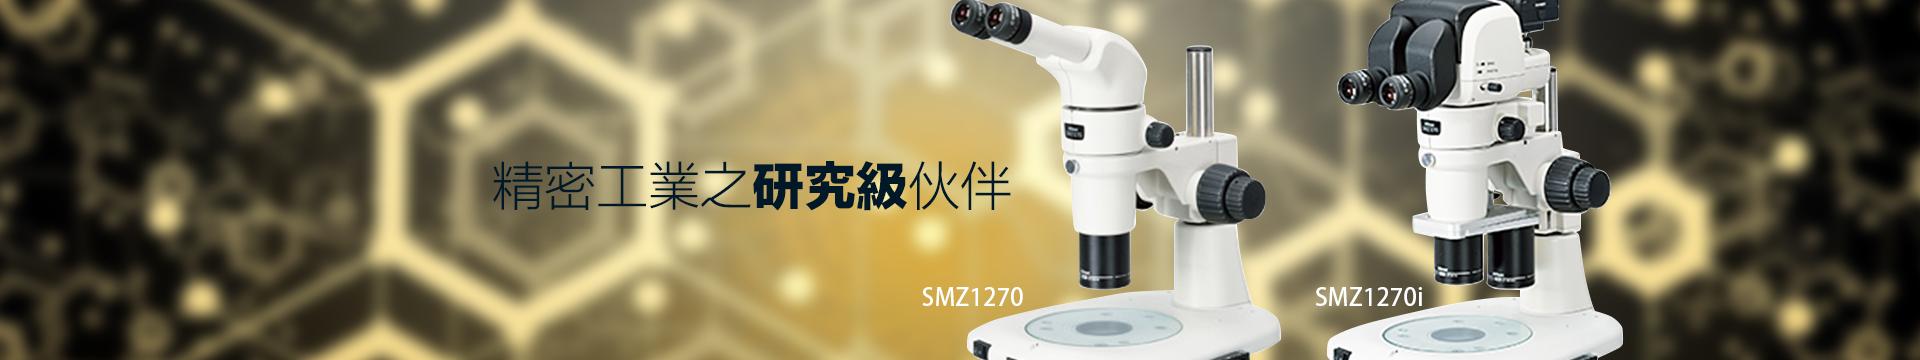 Nikon SMZ1270/SMZ1270i 中倍顯微鏡